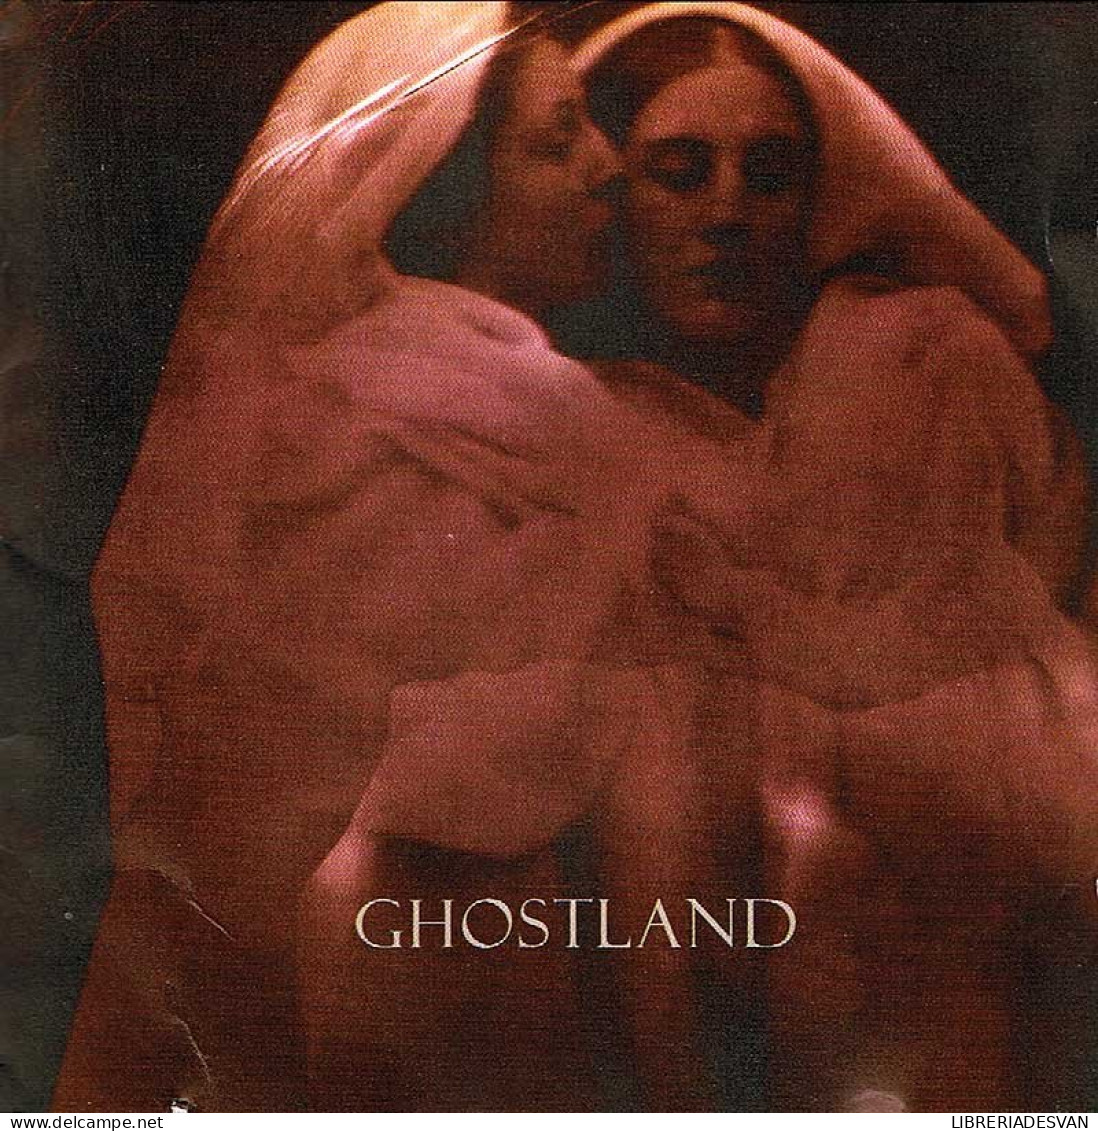 Ghostland - Ghostland. CD - New Age